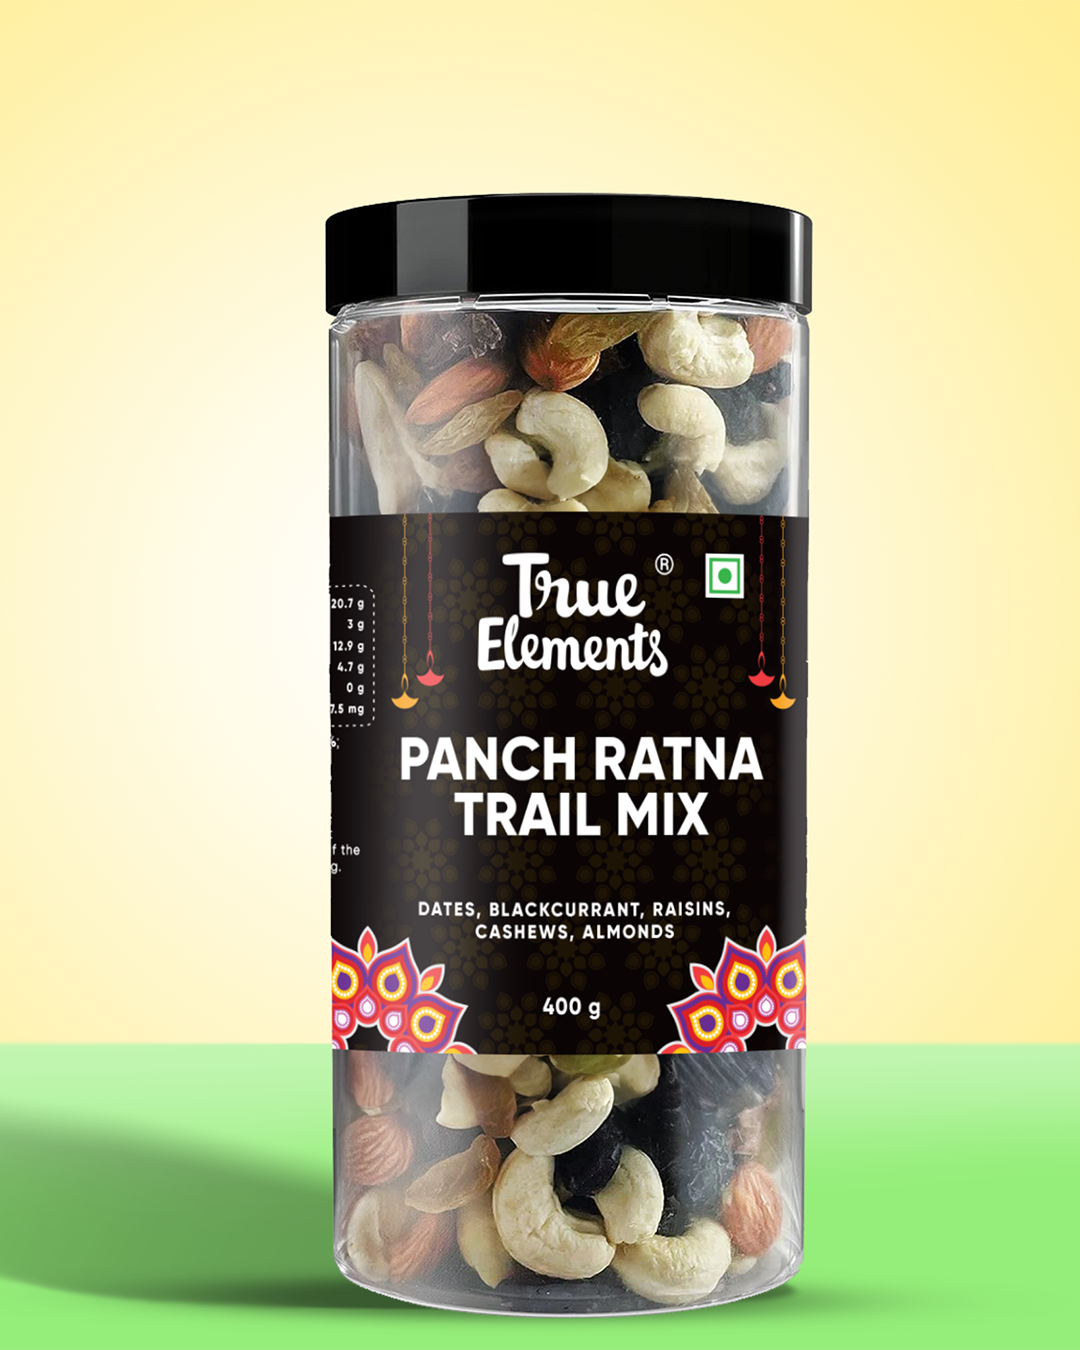 Buy Panchratna Mix - Premium Dryfruit Mix